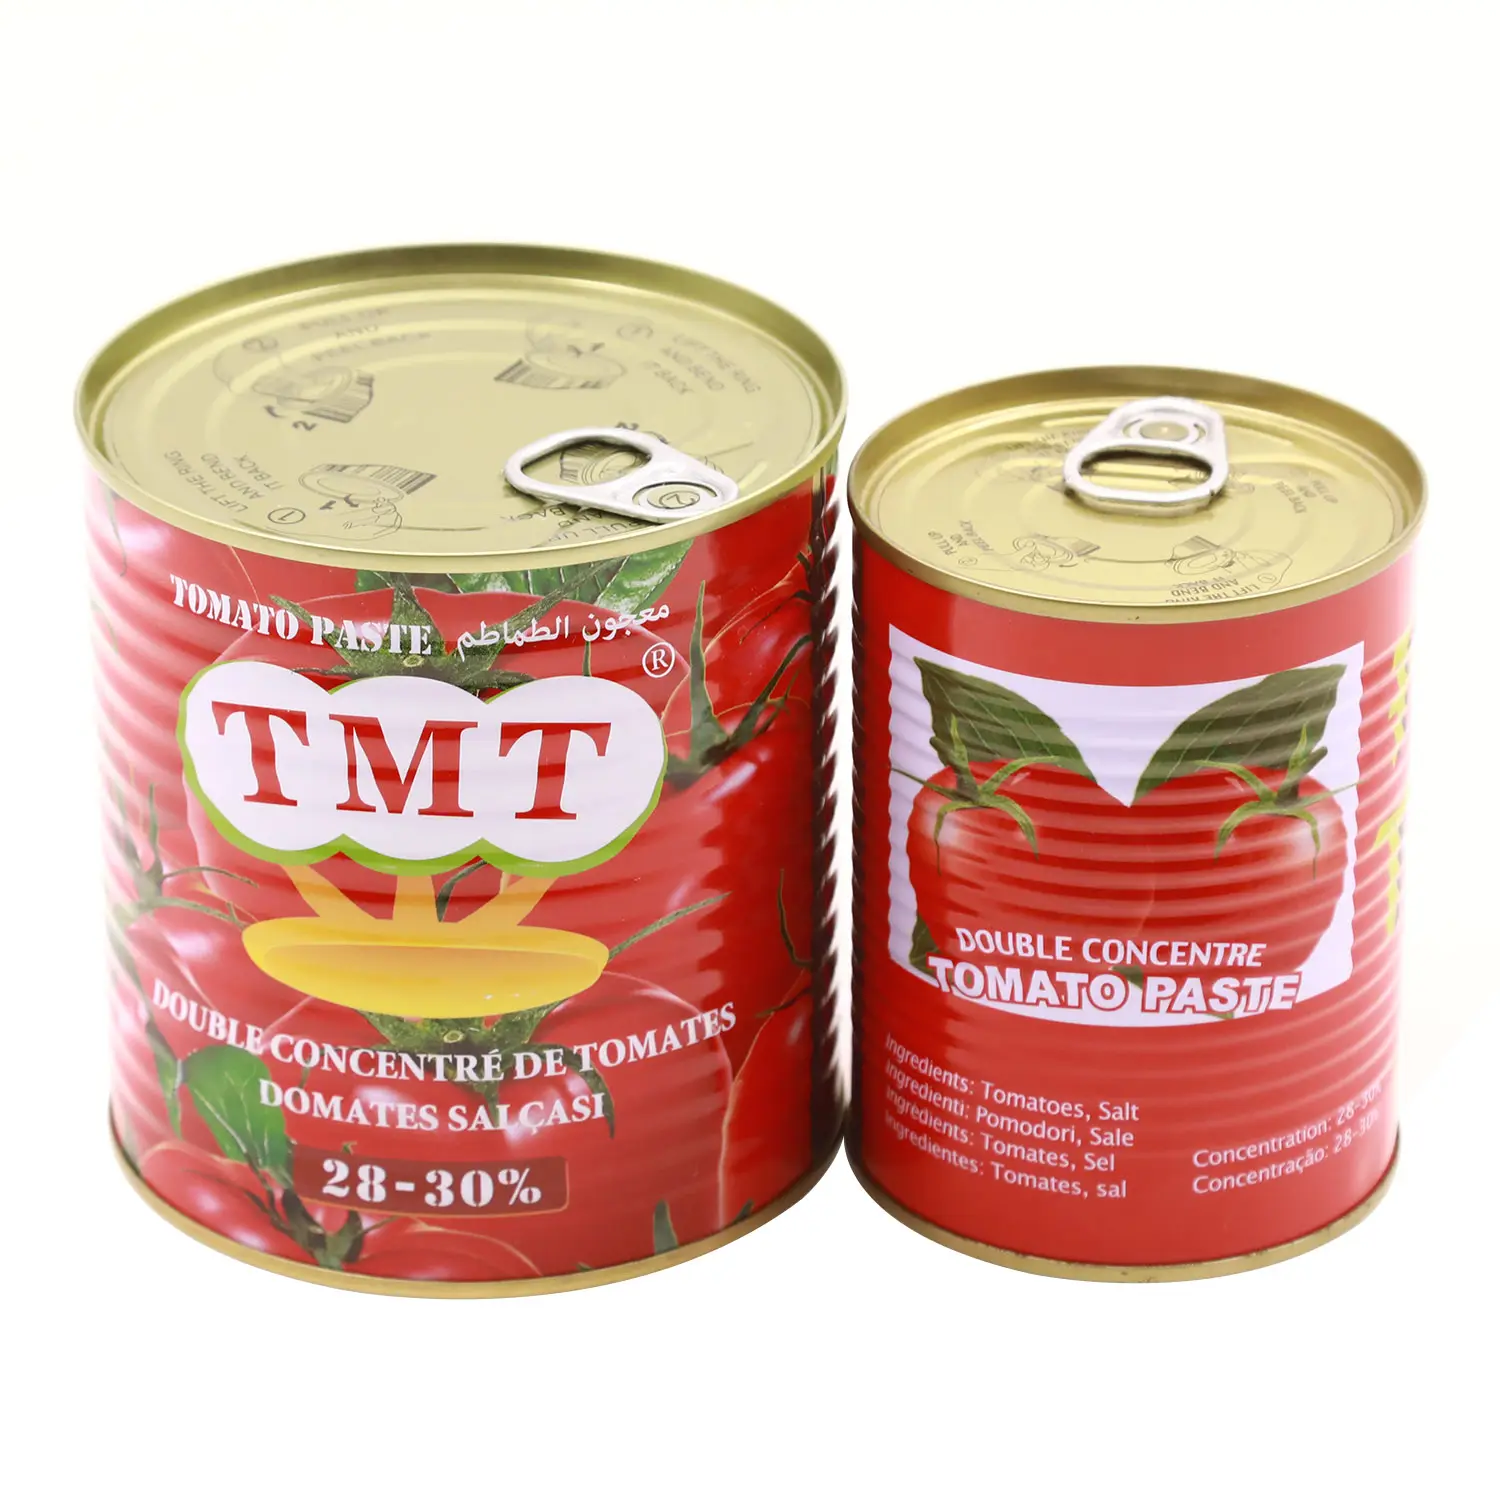 Estojo preço barato tomate pasta concentrado do fabricante 70 grama as e 2.2 kg tomate ketchup latido tomate passado